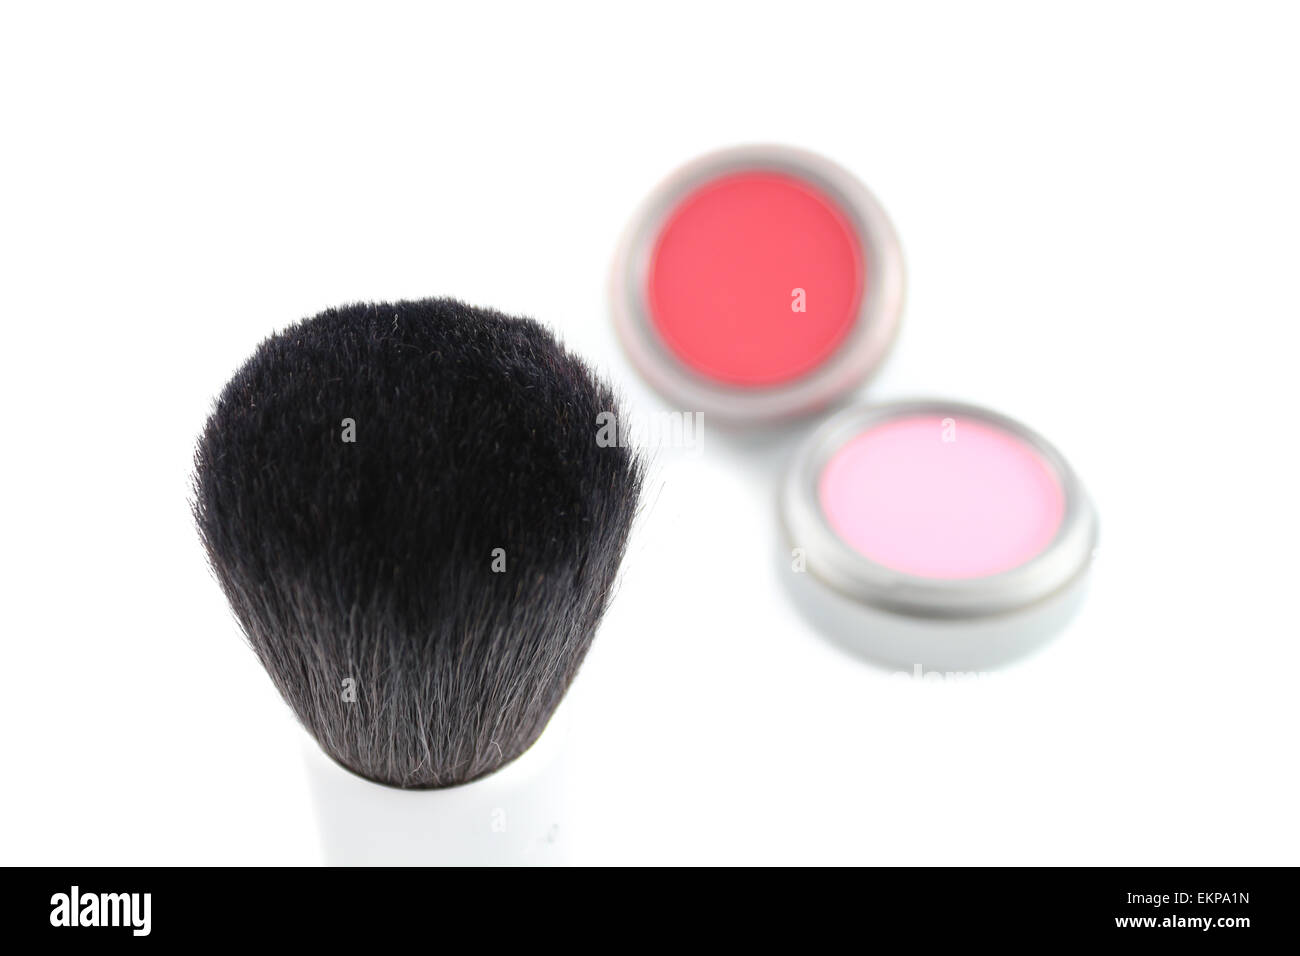 Makeup brush Stock Photo